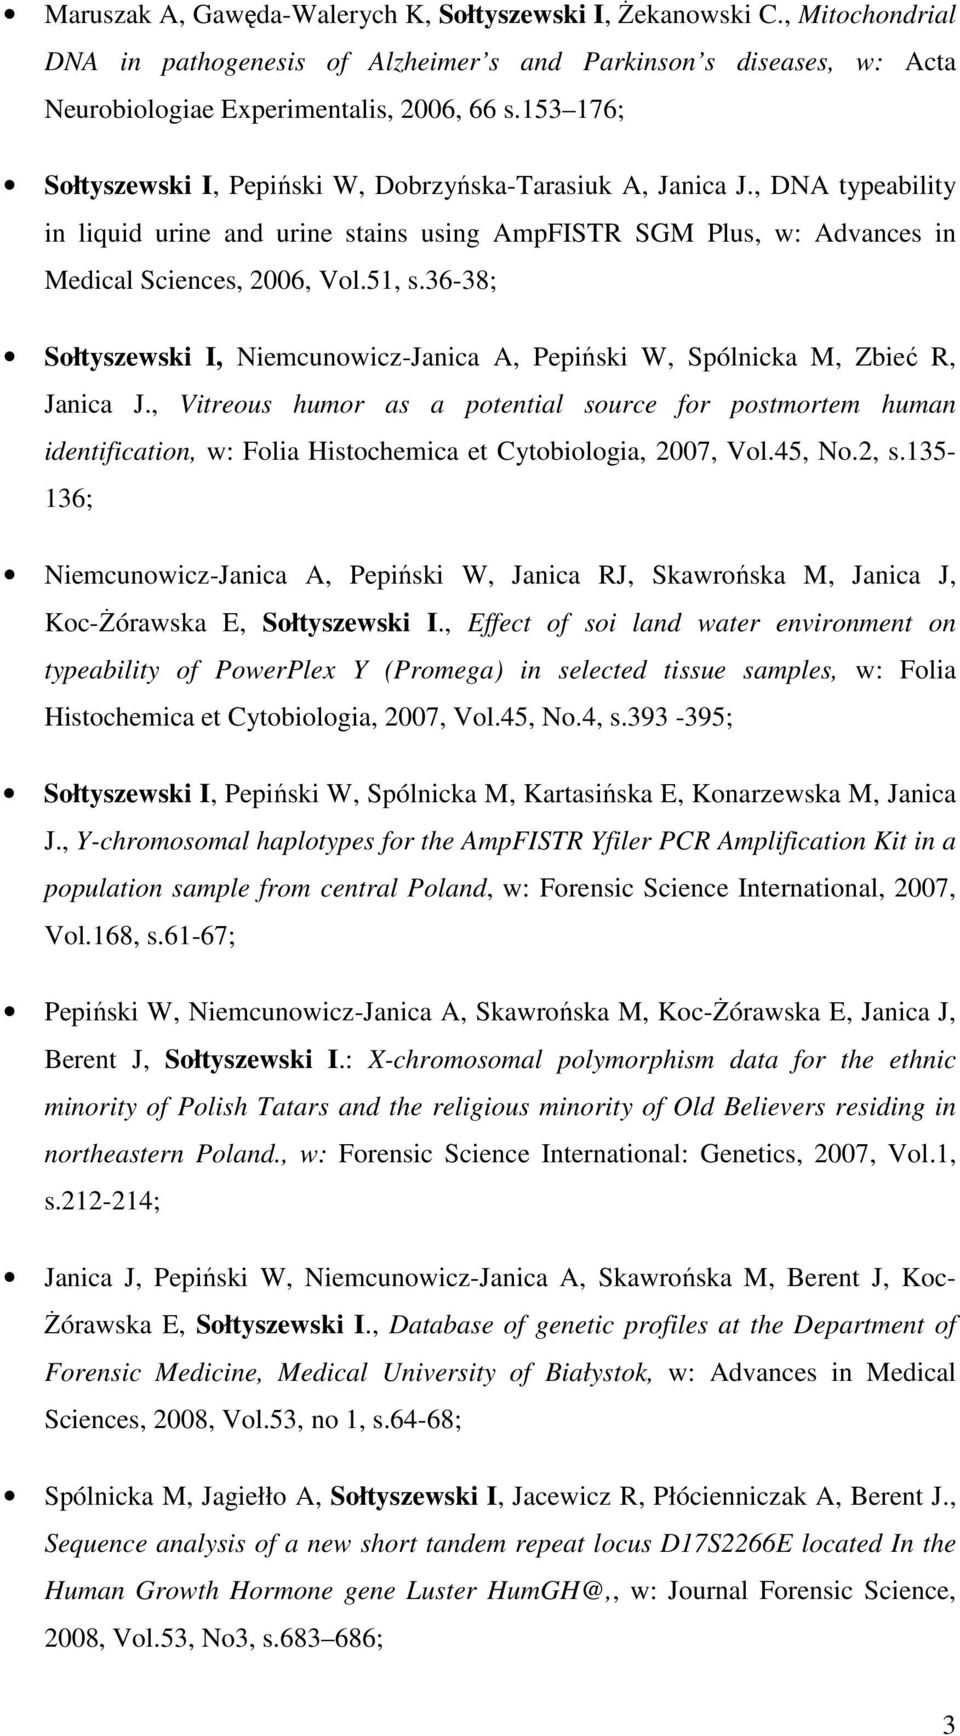 36-38; Sołtyszewski I, Niemcunowicz-Janica A, Pepiński W, Spólnicka M, Zbieć R, Janica J.